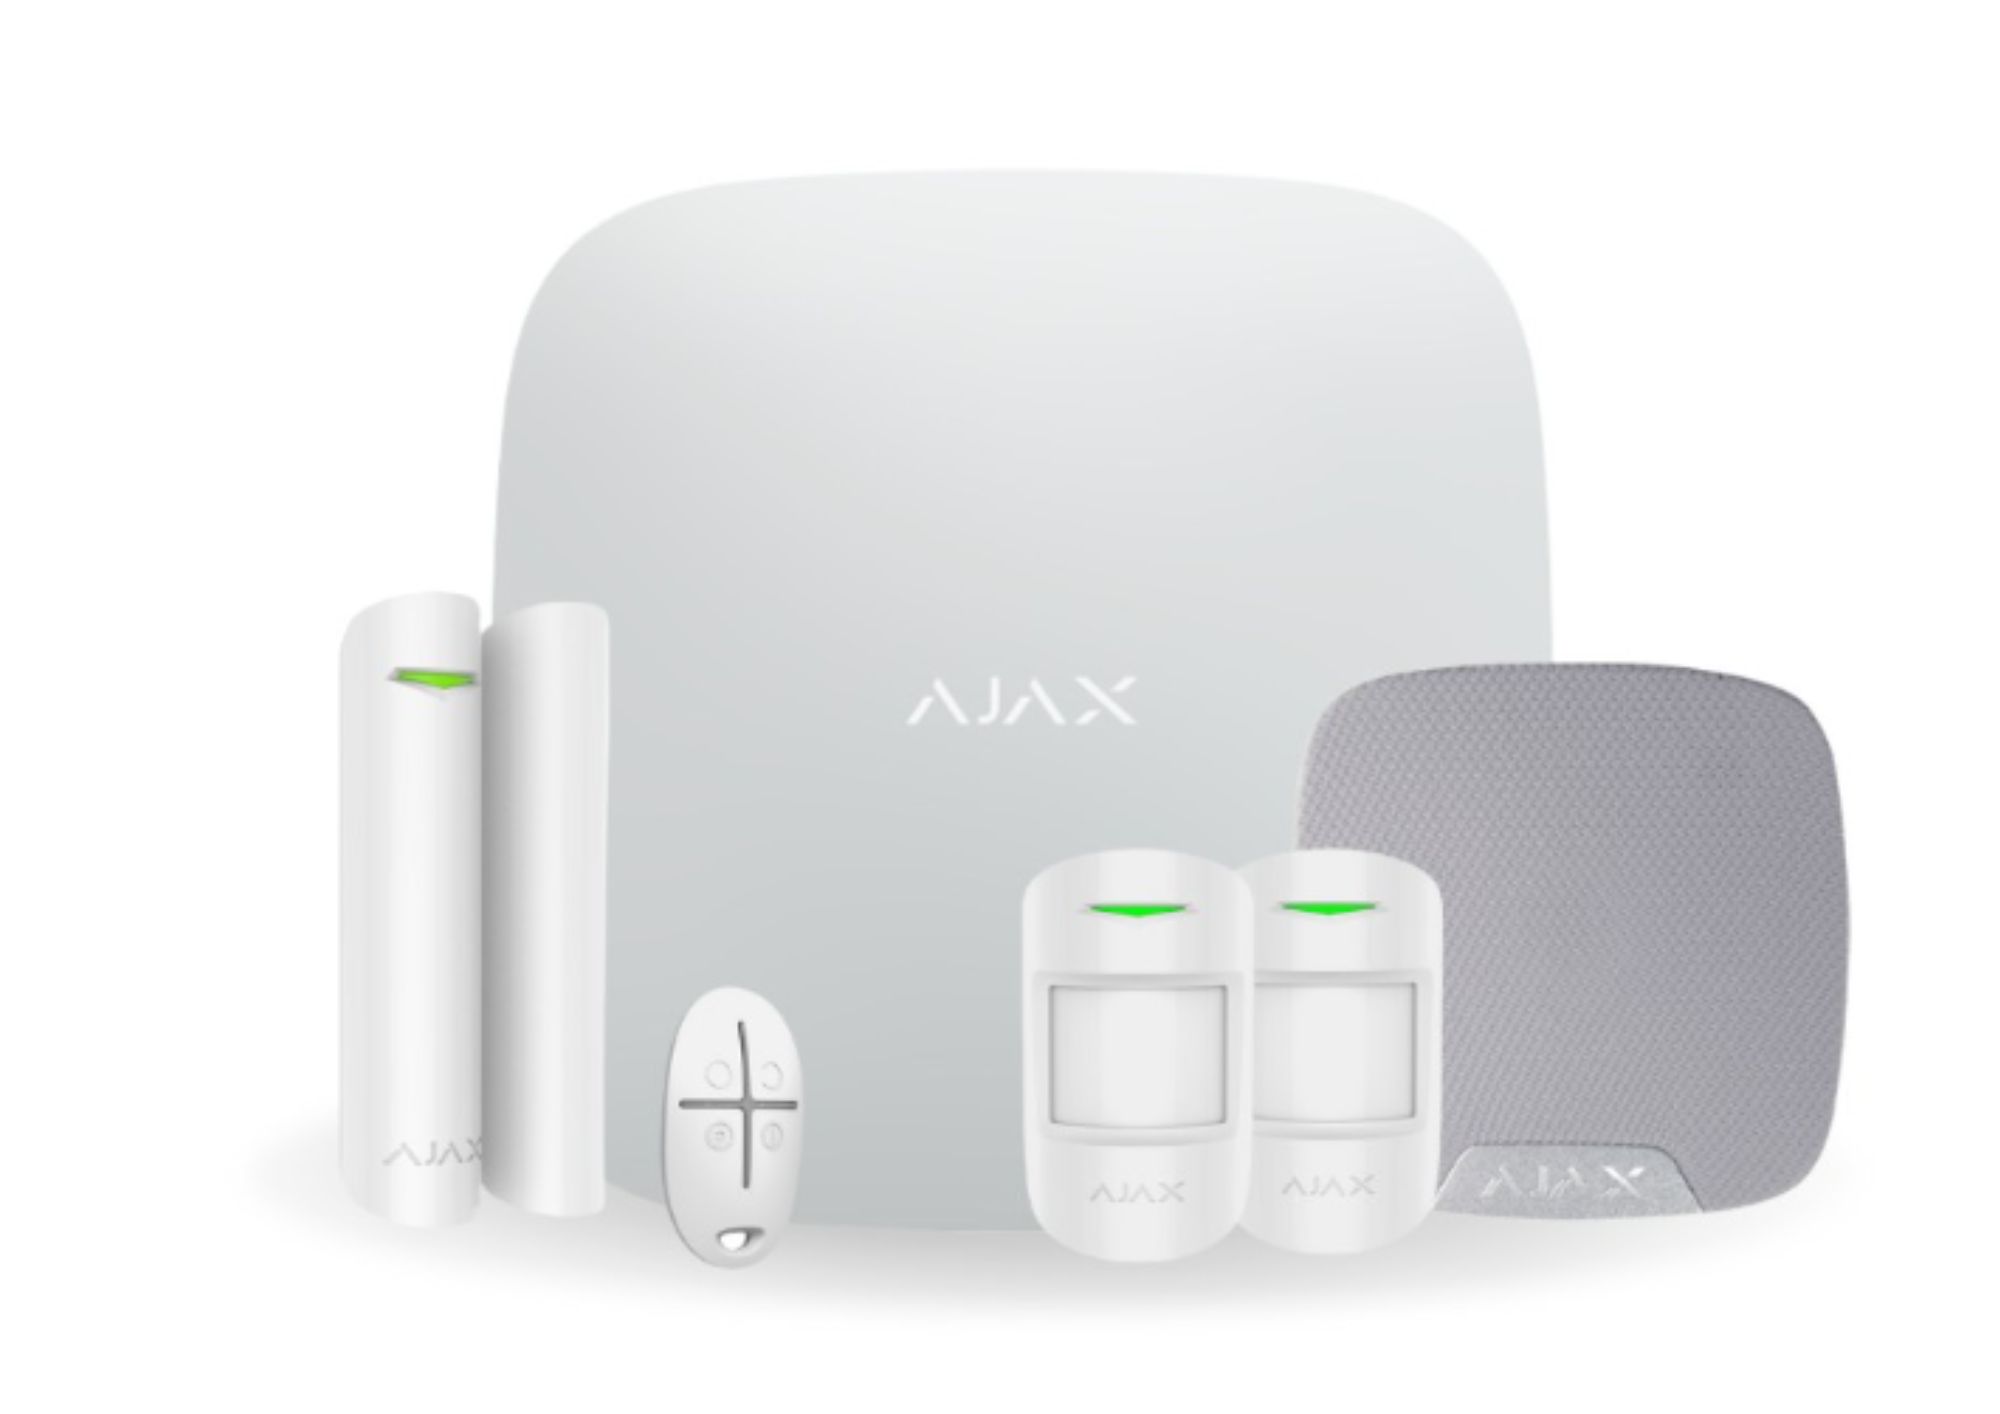 Sistema de seguridad avanzado: La alarma Ajax